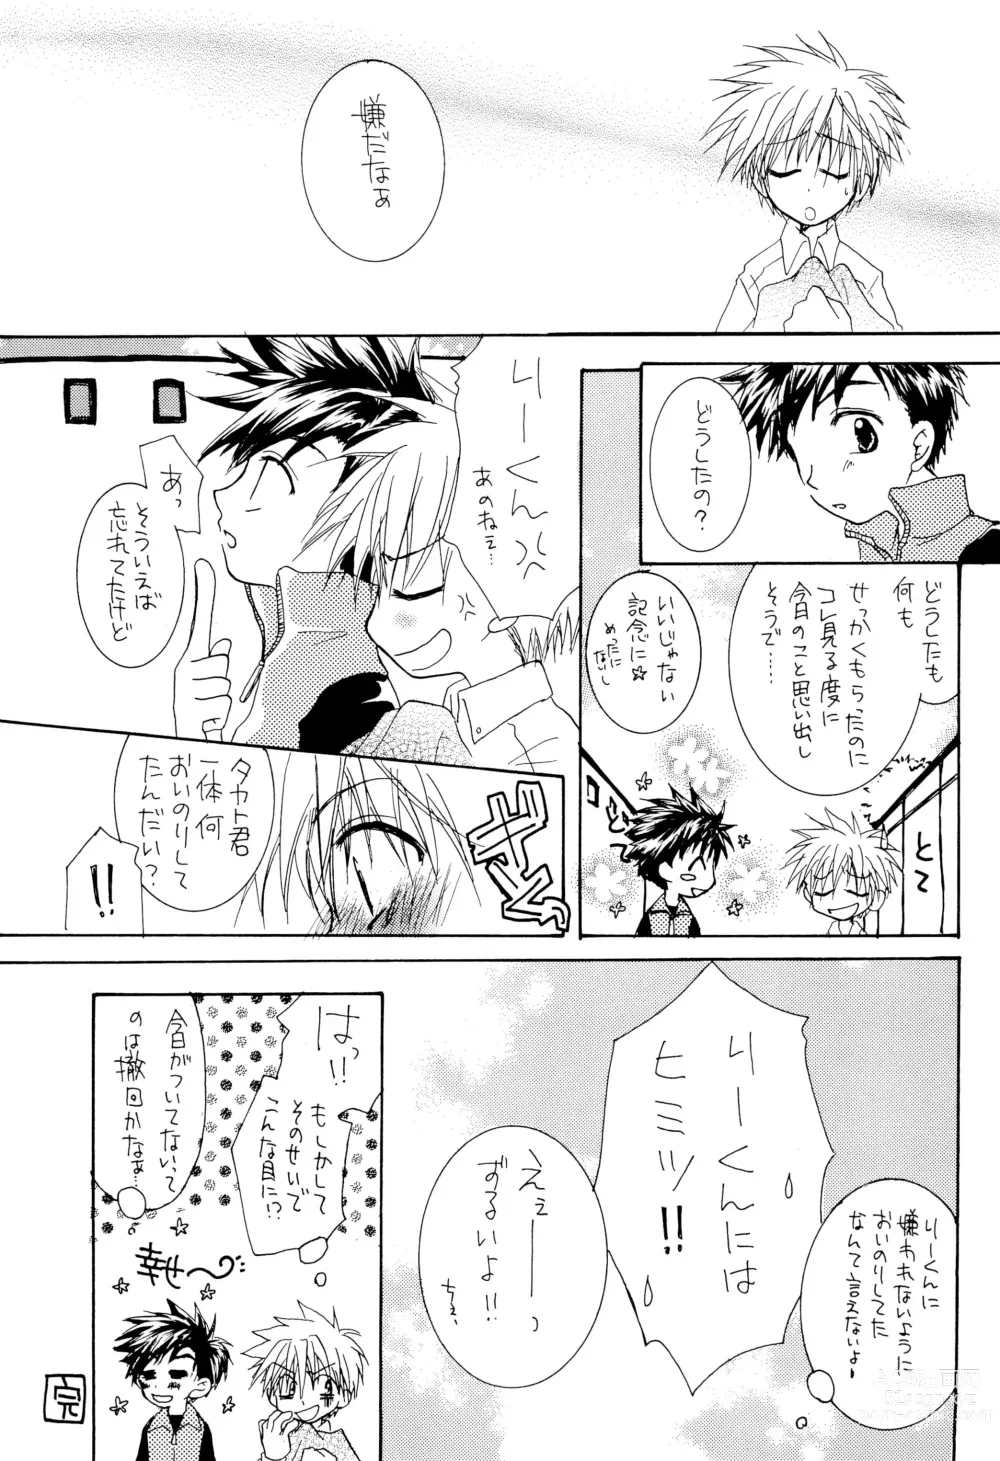 Page 17 of doujinshi LiTaka 2